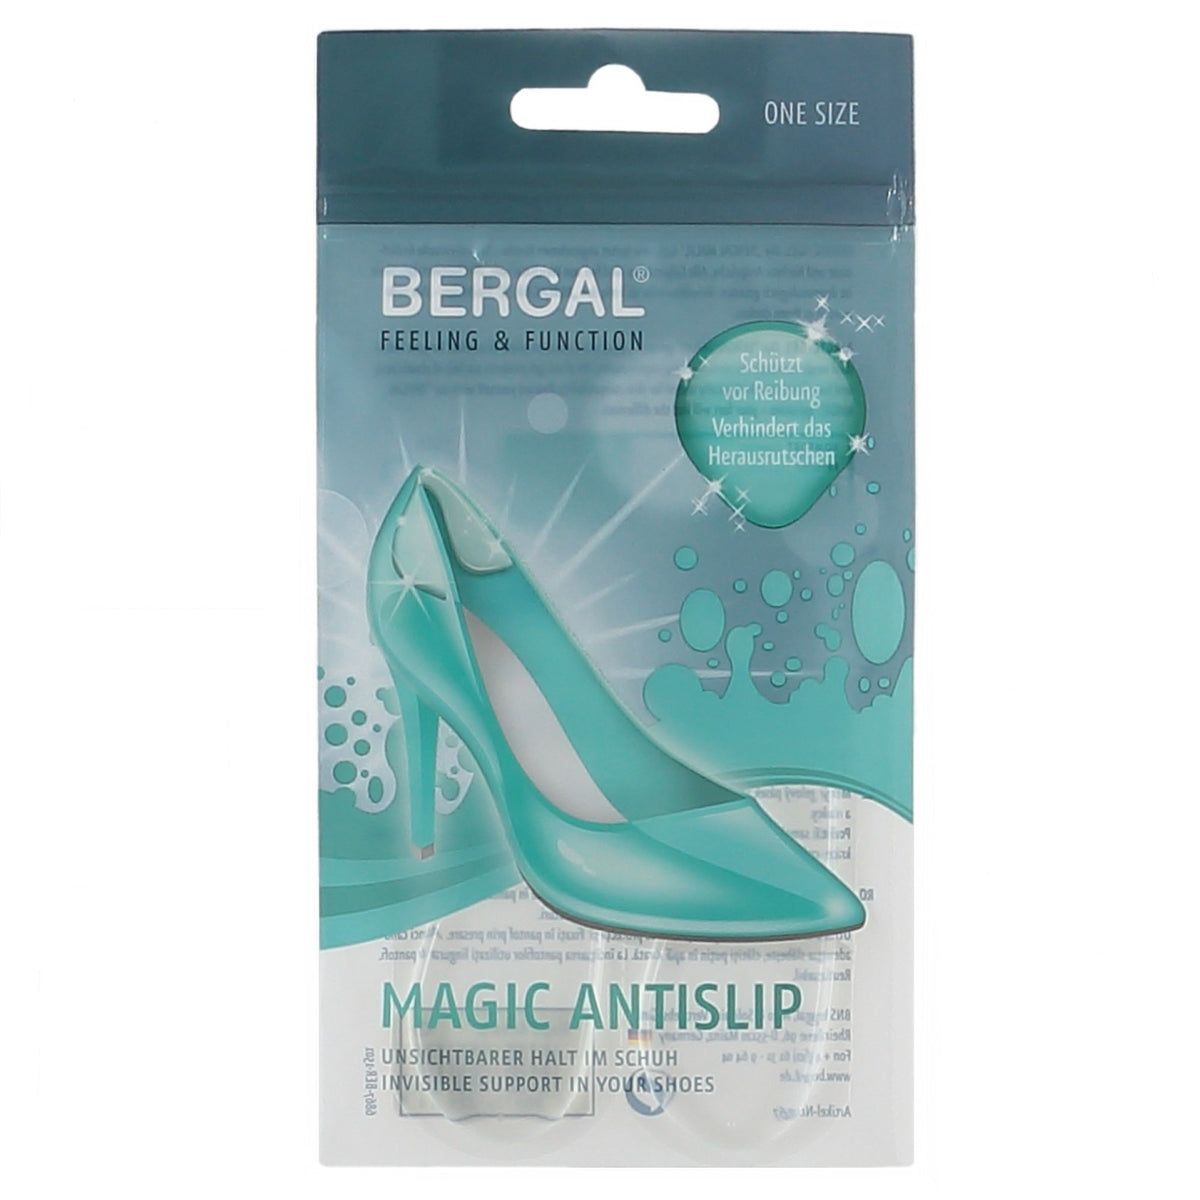 Magic Antislip sock protectors - transparent gel pads